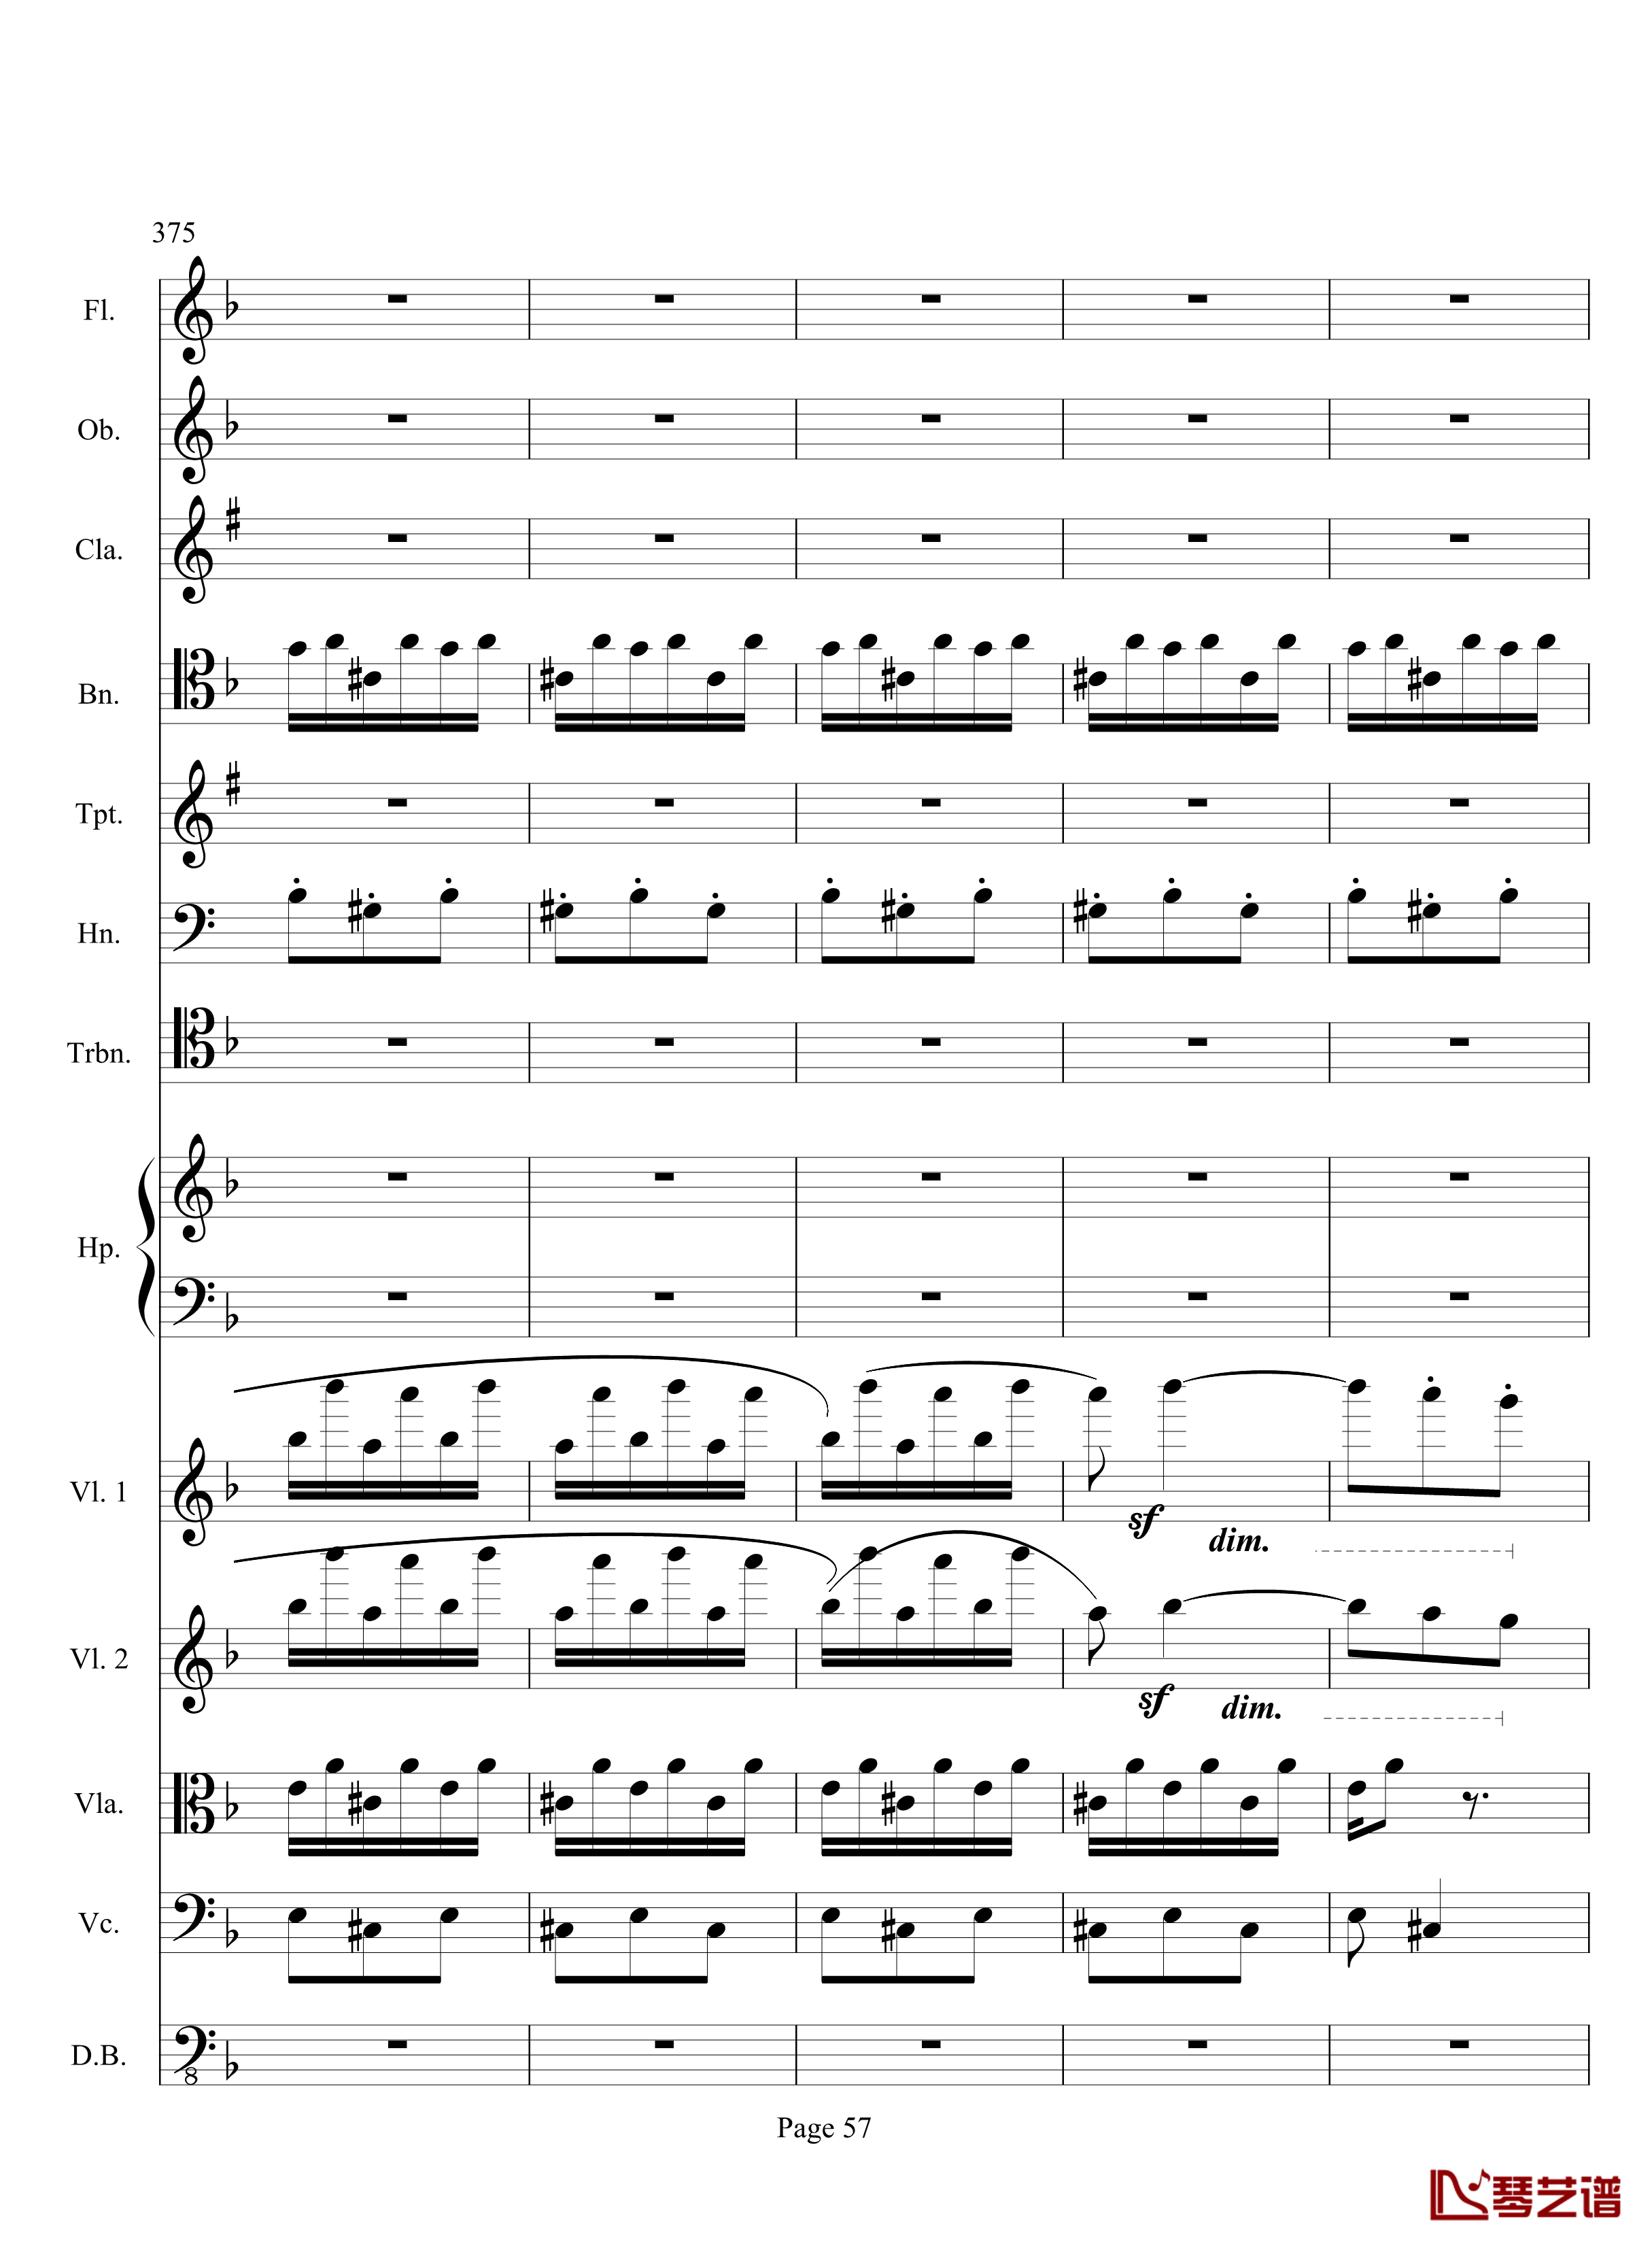 奏鸣曲之交响钢琴谱-第17首-Ⅲ-贝多芬-beethoven57